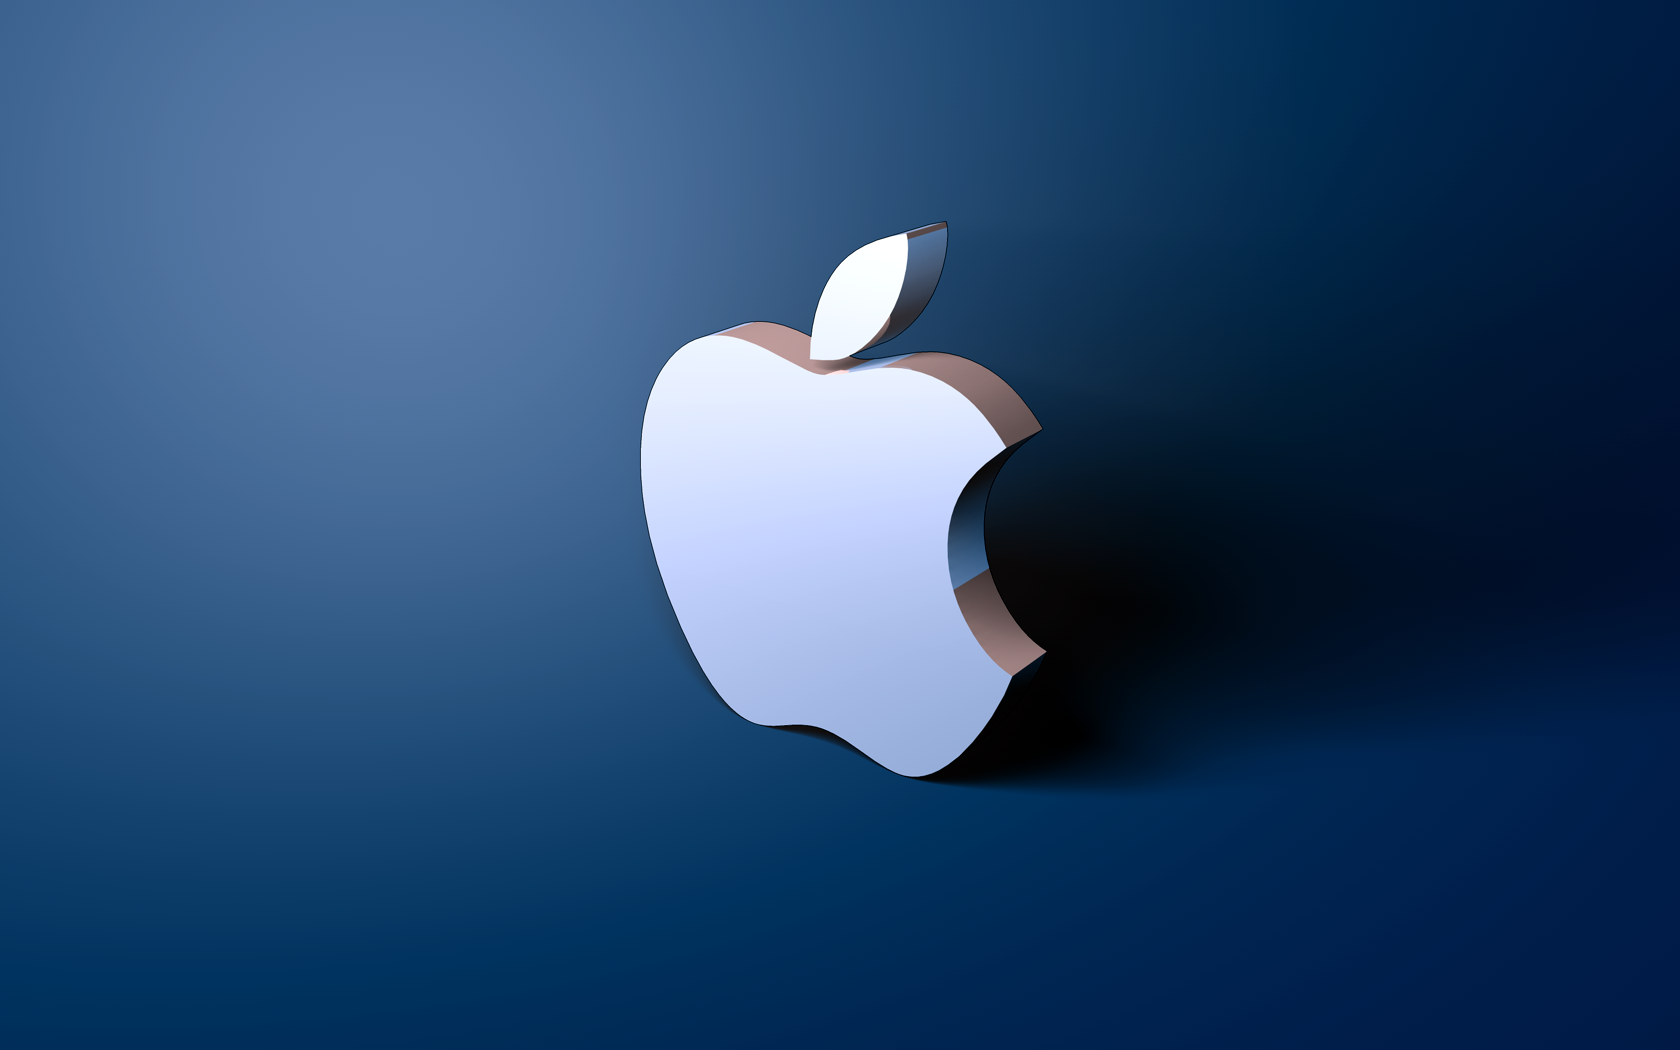 Apple принесла вибачення за прослуховування повідомлень для Siri